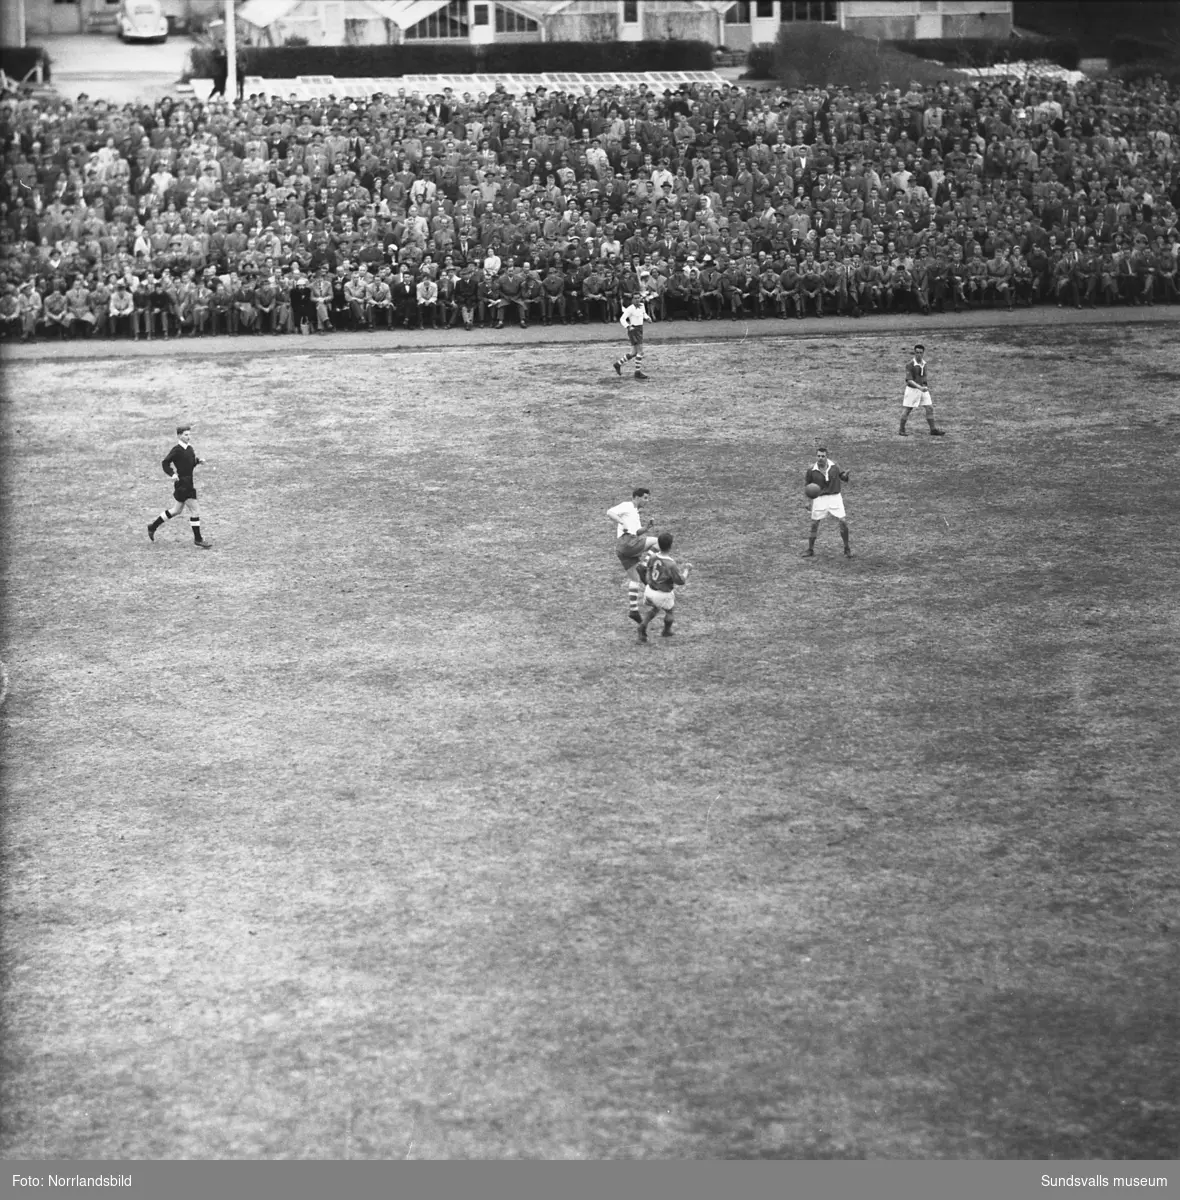 Publiken strömmade till Idrottsparken då GIF Sundsvall mötte Eskilstuna i klubbens första kval till högsta serien 1957. Matchen slutade 1-1 och publiksiffran var imponerande 11000.